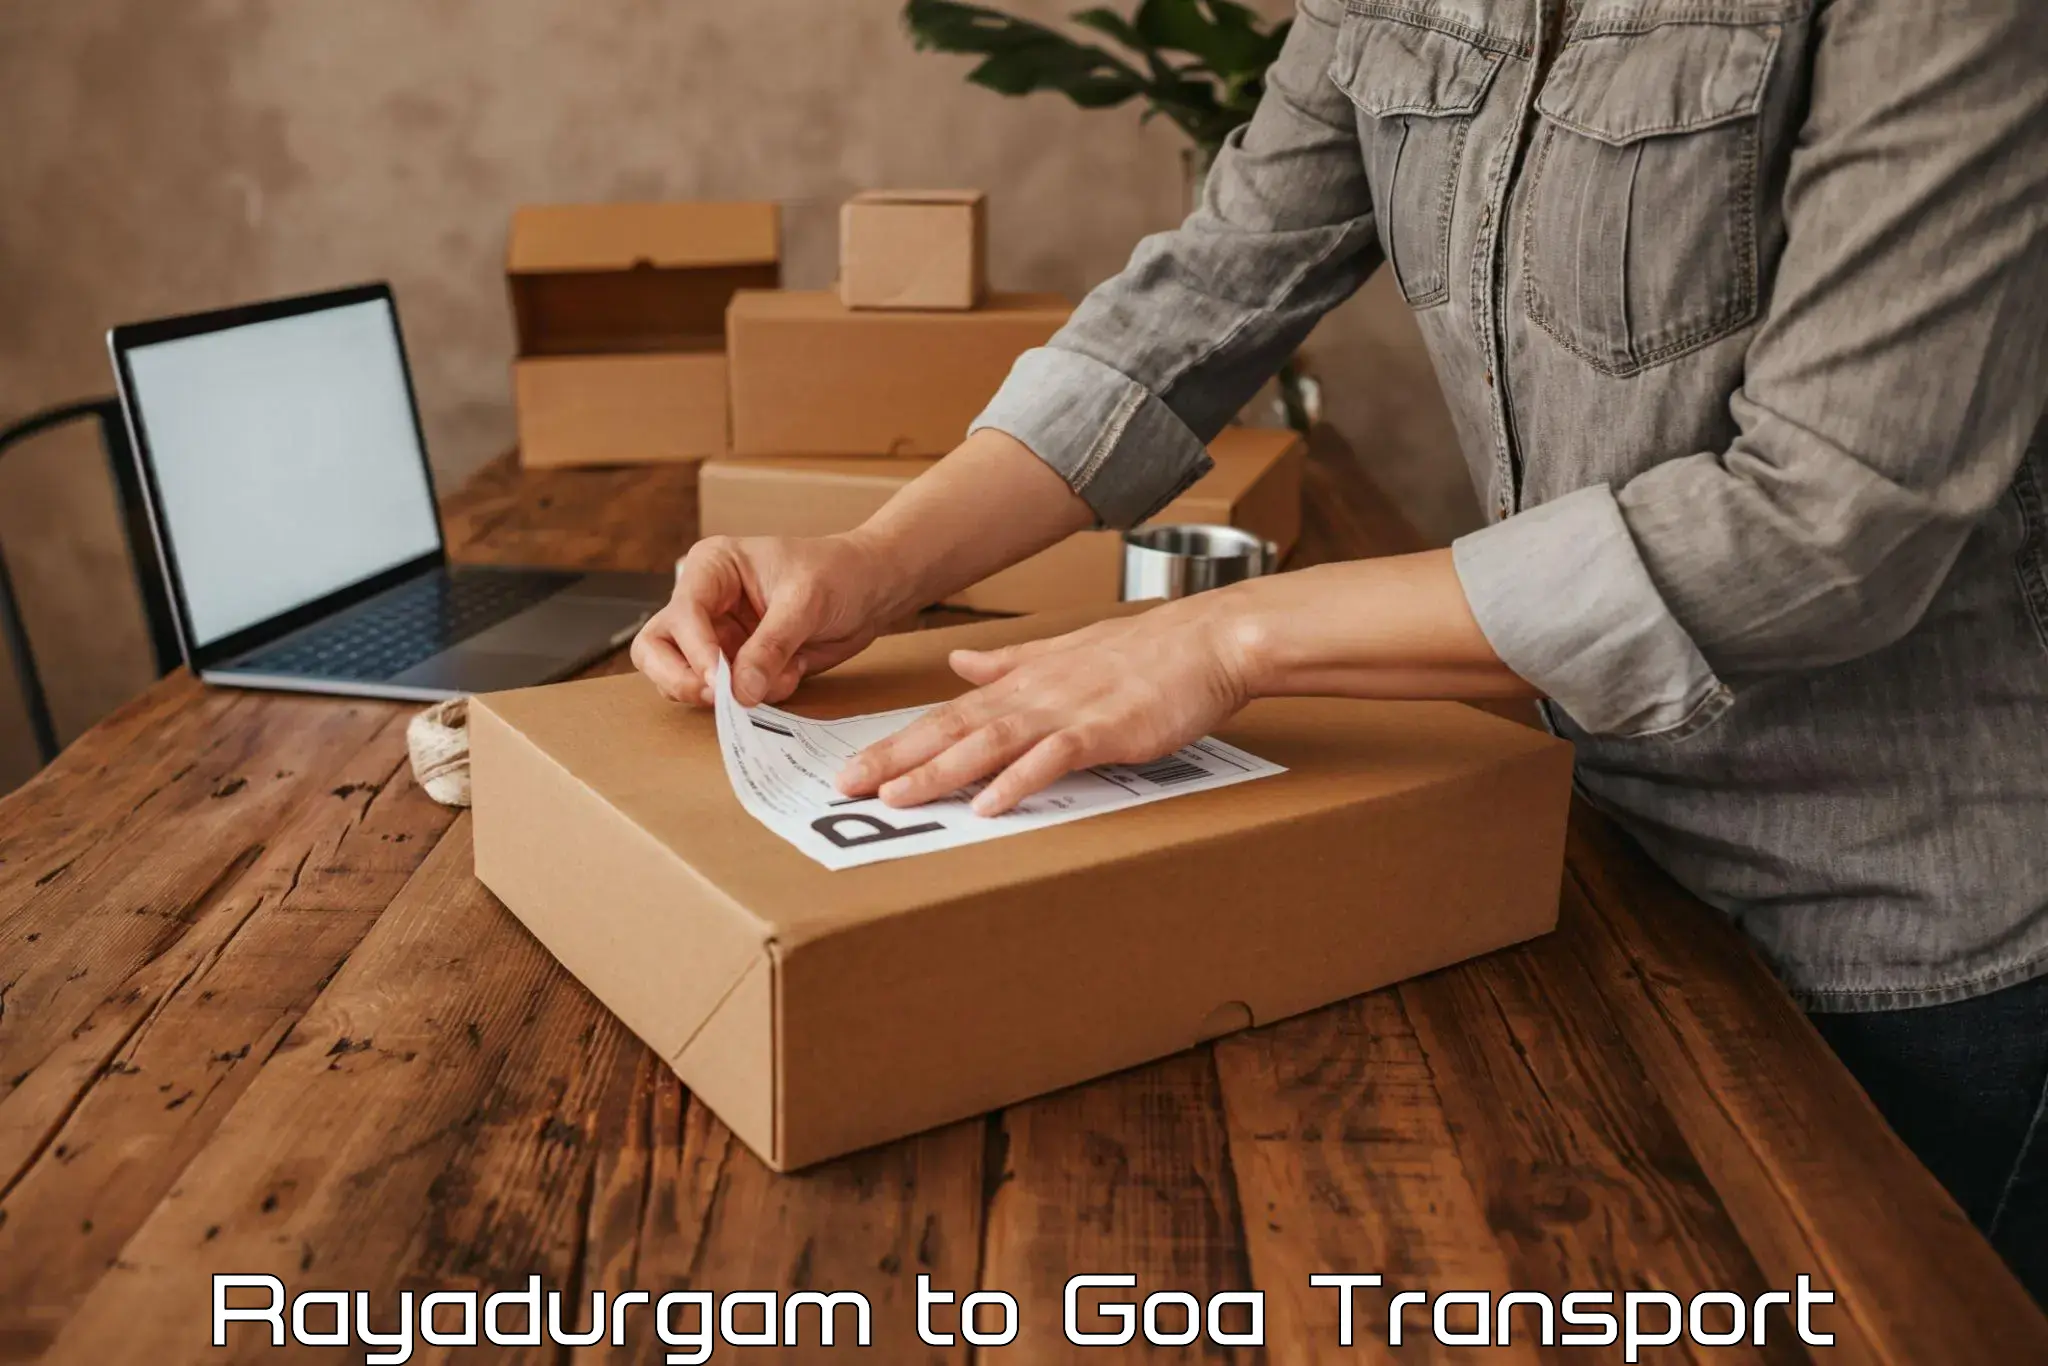 International cargo transportation services Rayadurgam to Mormugao Port